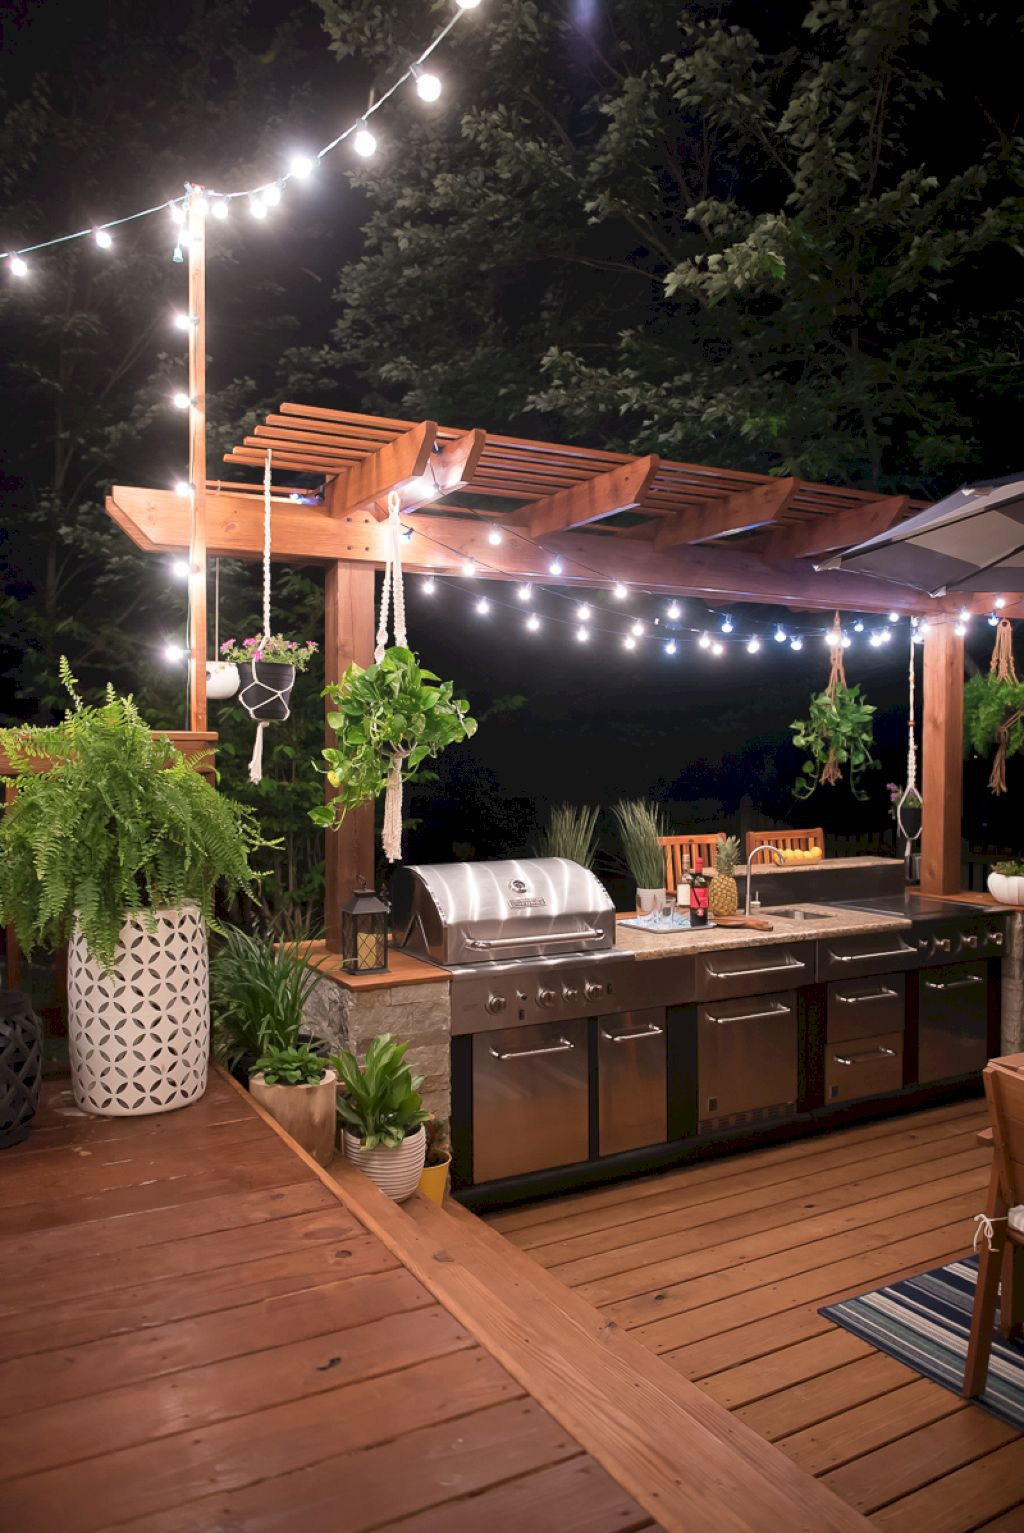 Outdoor Patio Kitchen Designs
 30 Best Outdoor Kitchen Design Ideas